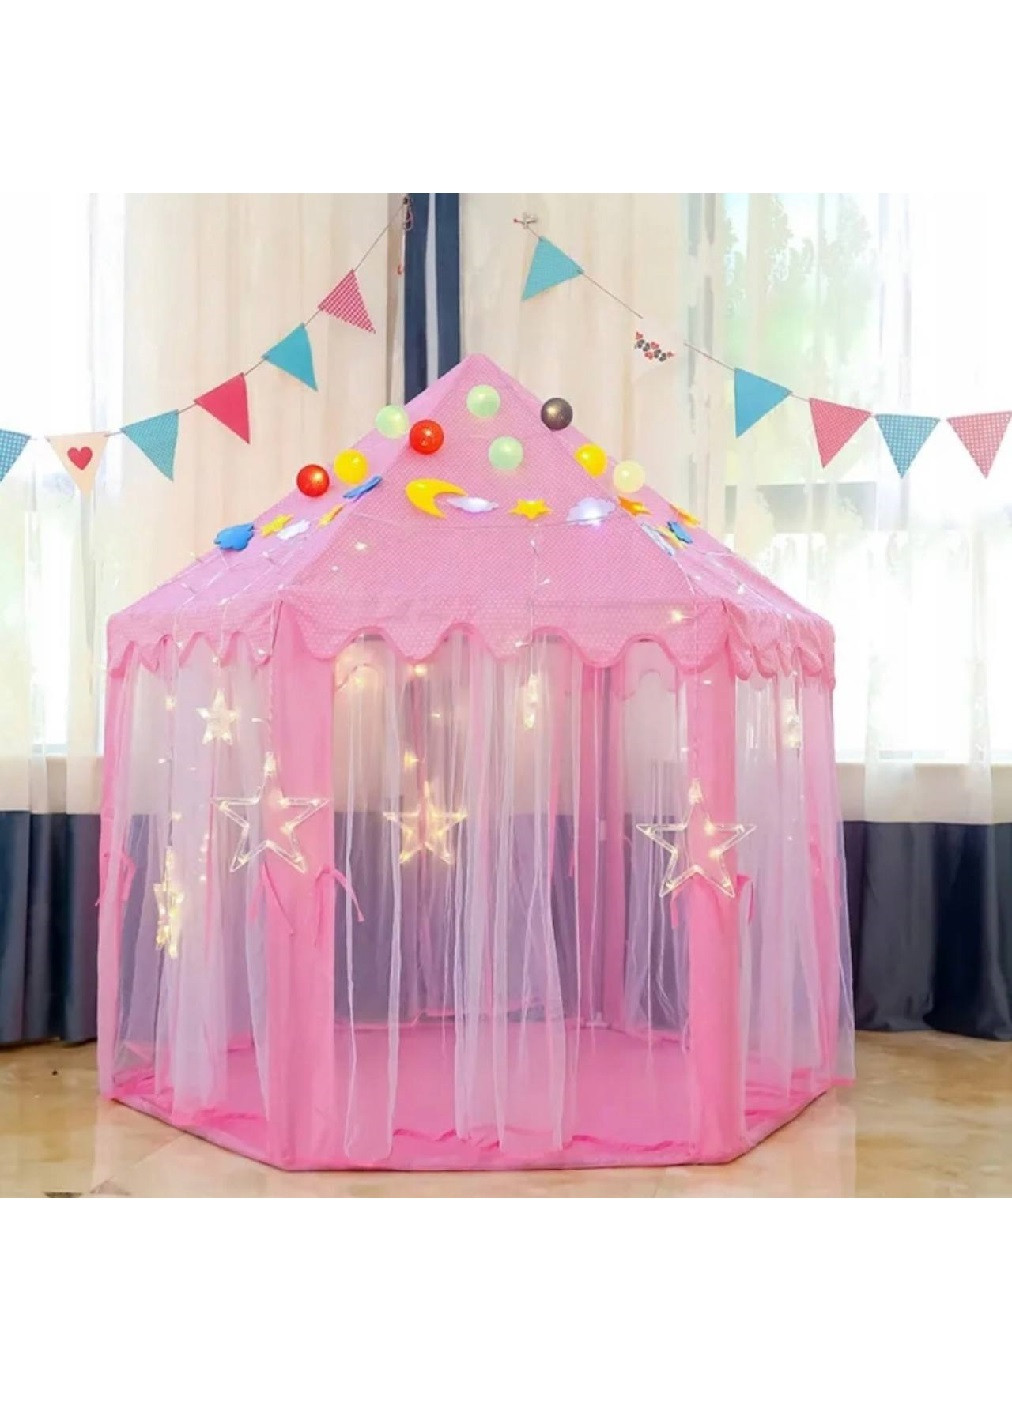 Детская игровая палатка шатер домик замок дворец для девочек 135х135х140см (474526-Prob) Розовый Unbranded (258670732)